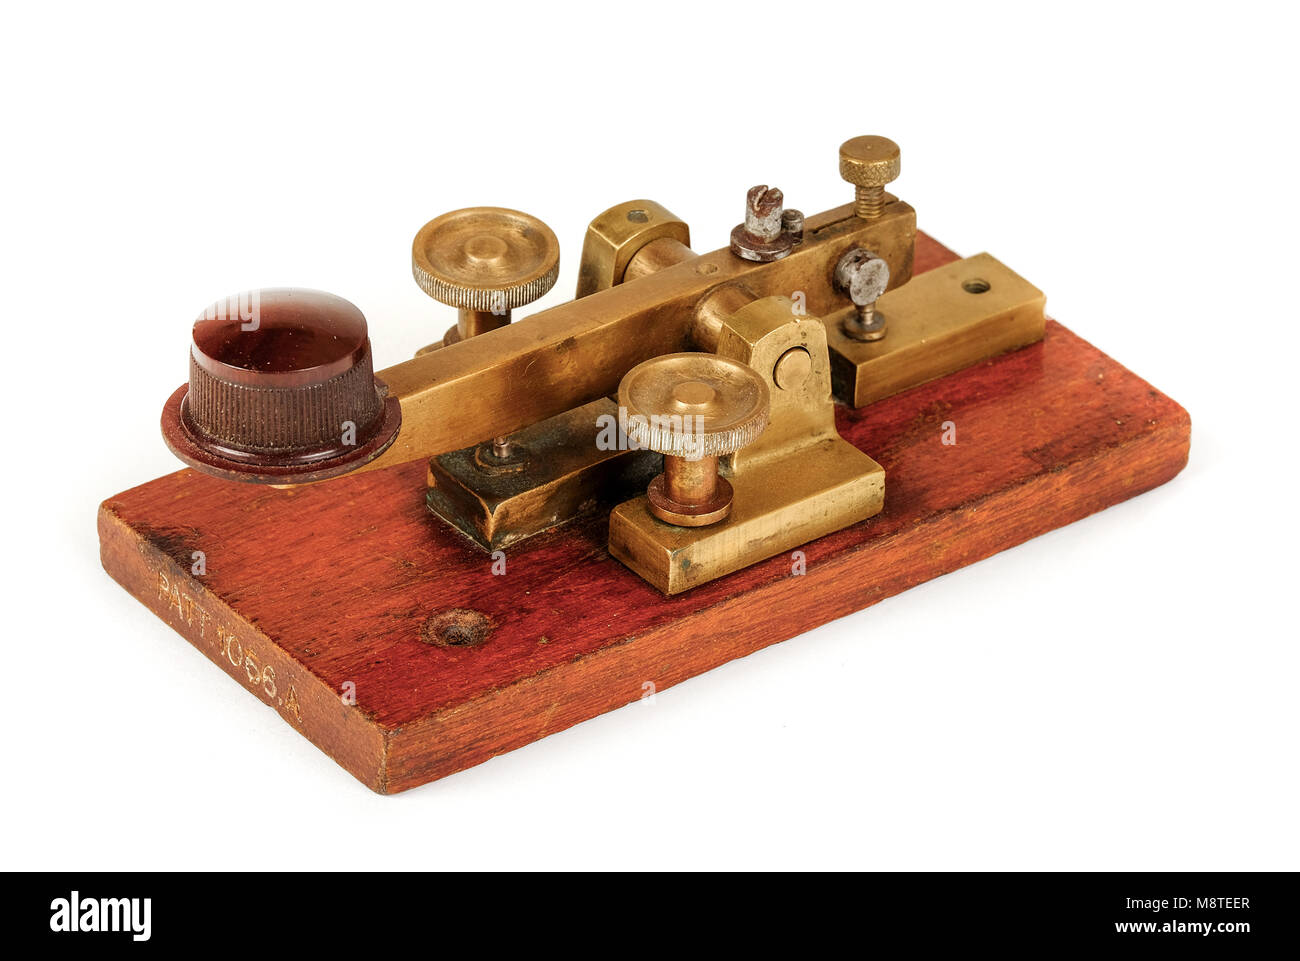 Frühe antike GPO (British Post Office) telegraph Schlüssel zum Senden Telegramm Nachrichten mit Morse Code, Patent Nr. 1056 A, von WEMCO. Stockfoto